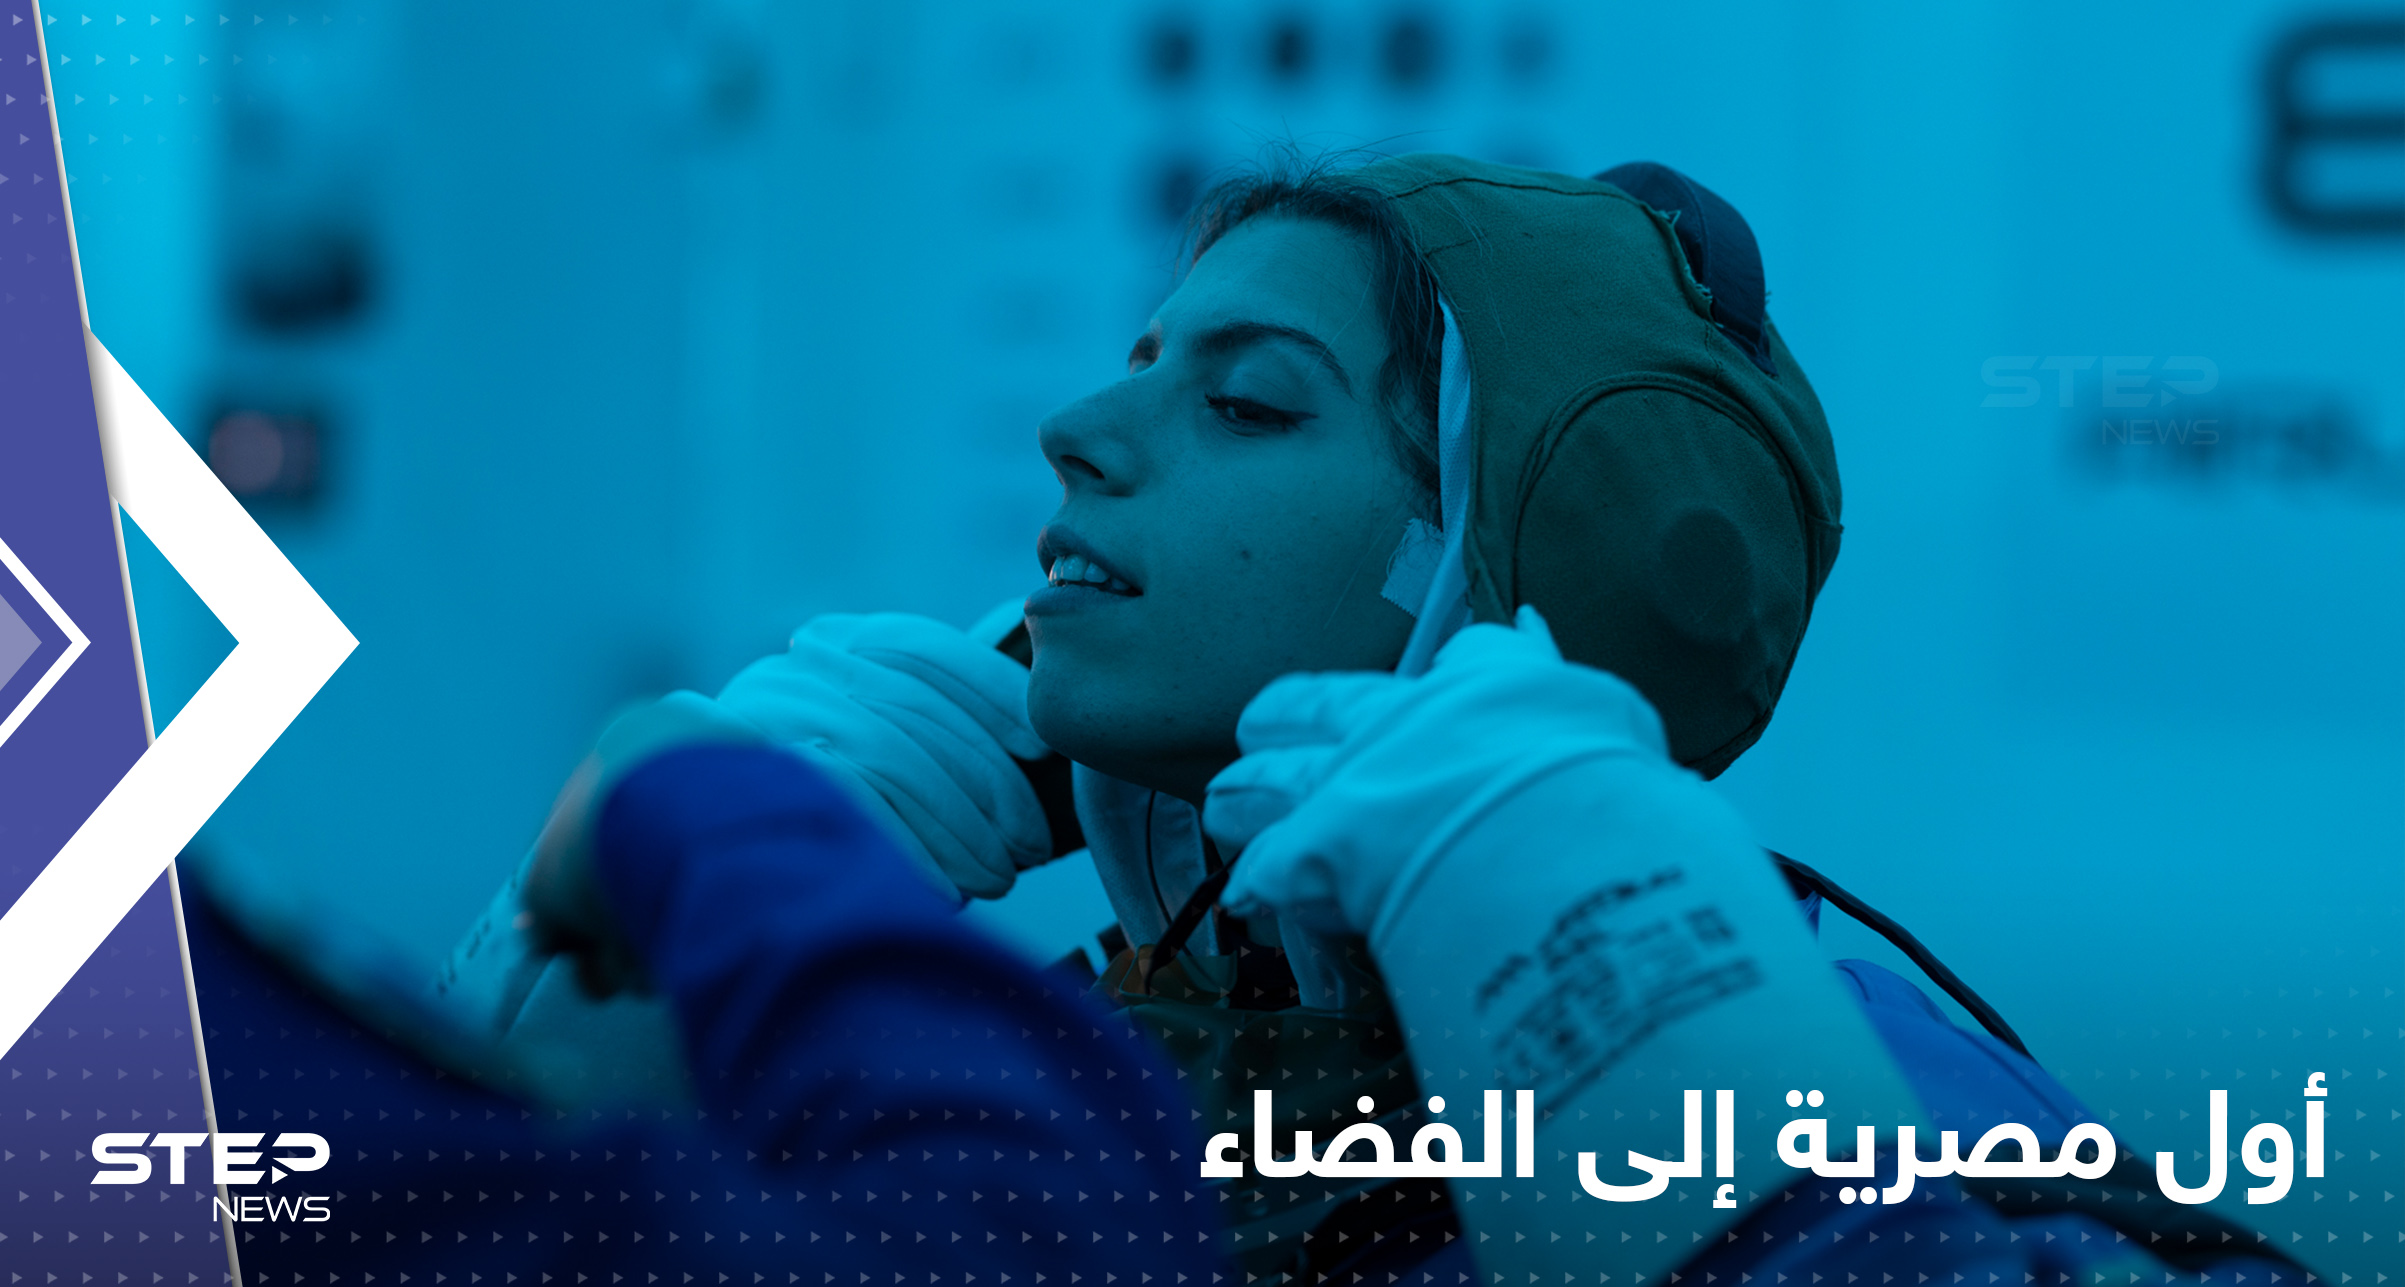 شاهد|| أول مصرية إلى الفضاء.. شركة "بلو أوريجين" تطلق رحلة في الفضاء شبه المداري